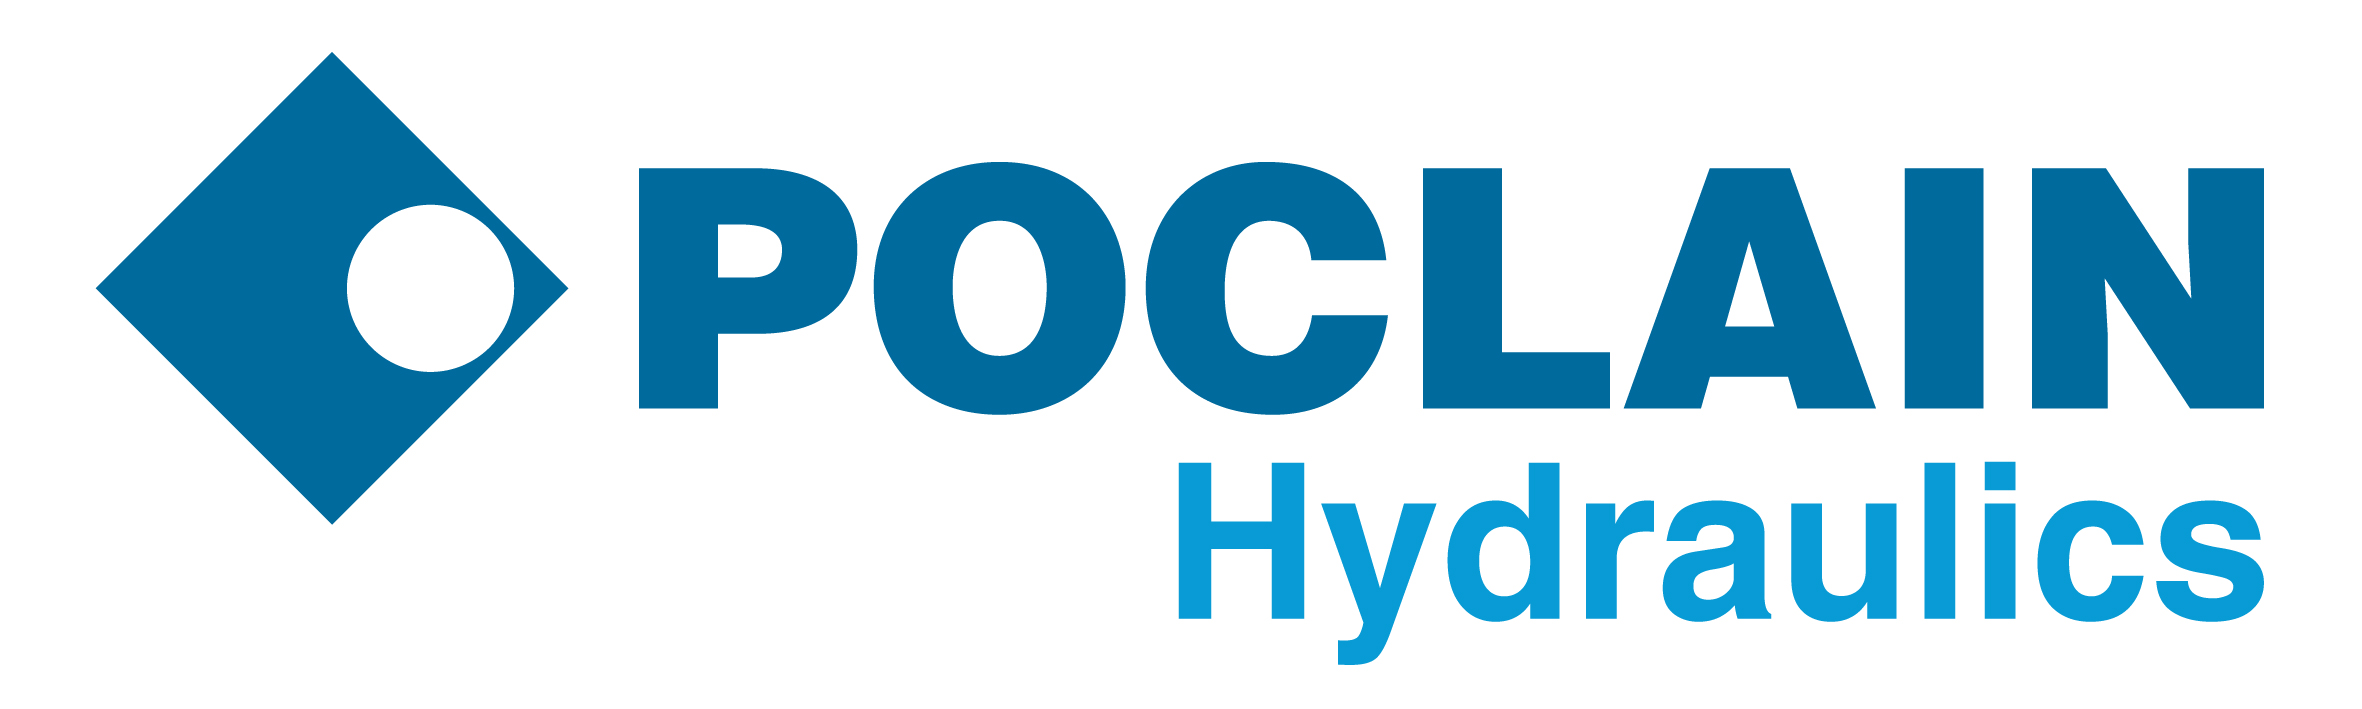 Poclain Hydraulics Ltd